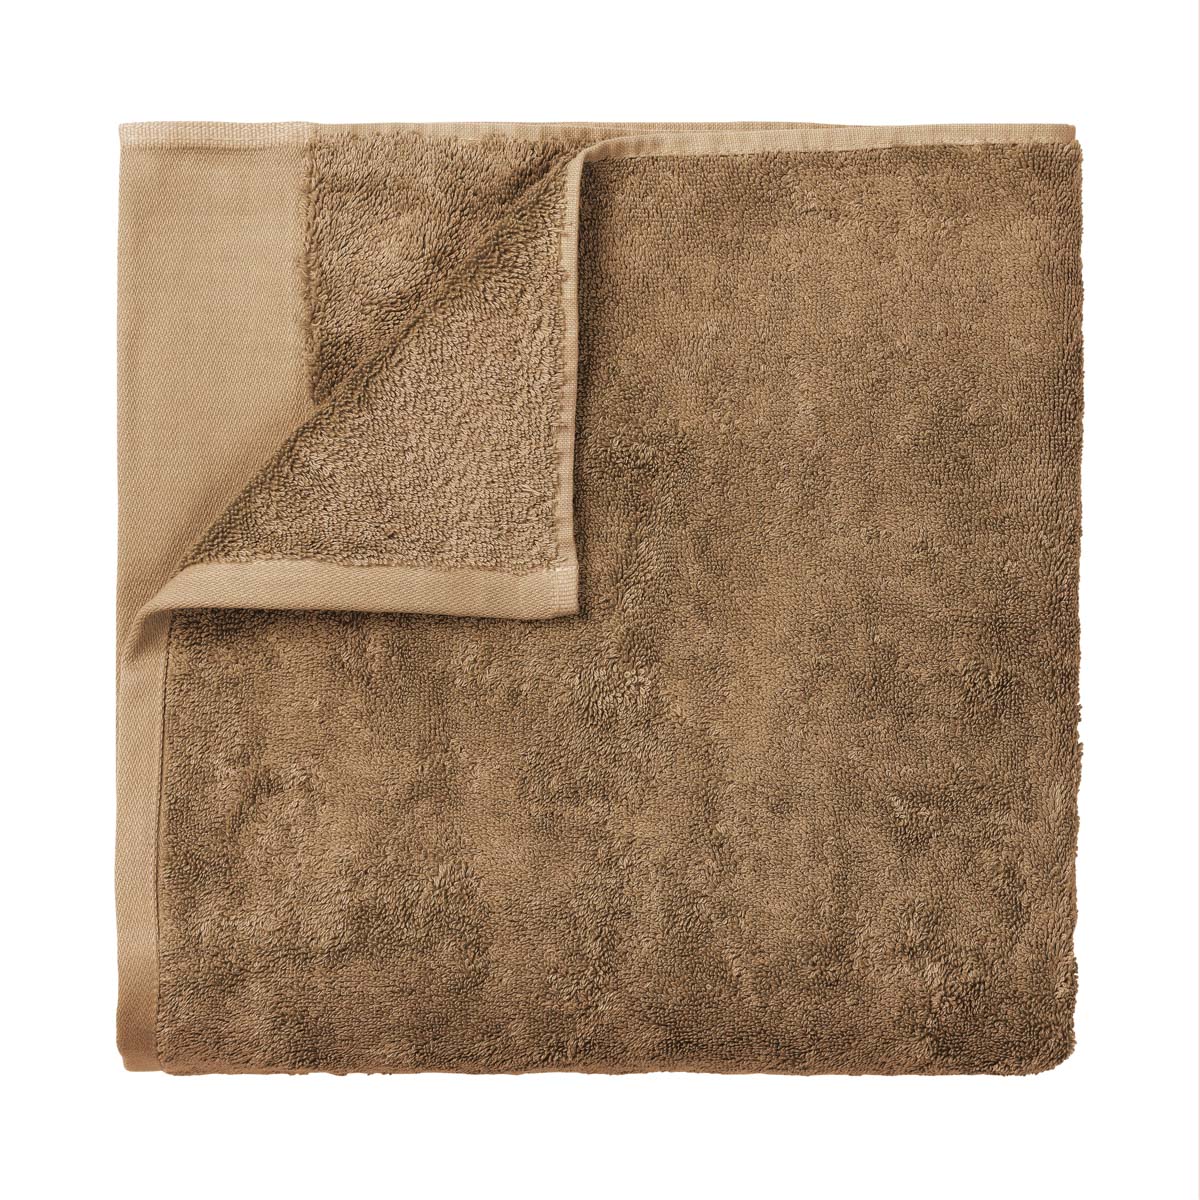 Badetuch -RIVA- Tan 70 x 140 cm, features: text Bio Baumwolle, GOTS. Material: Baumwolle. Von Blomus.